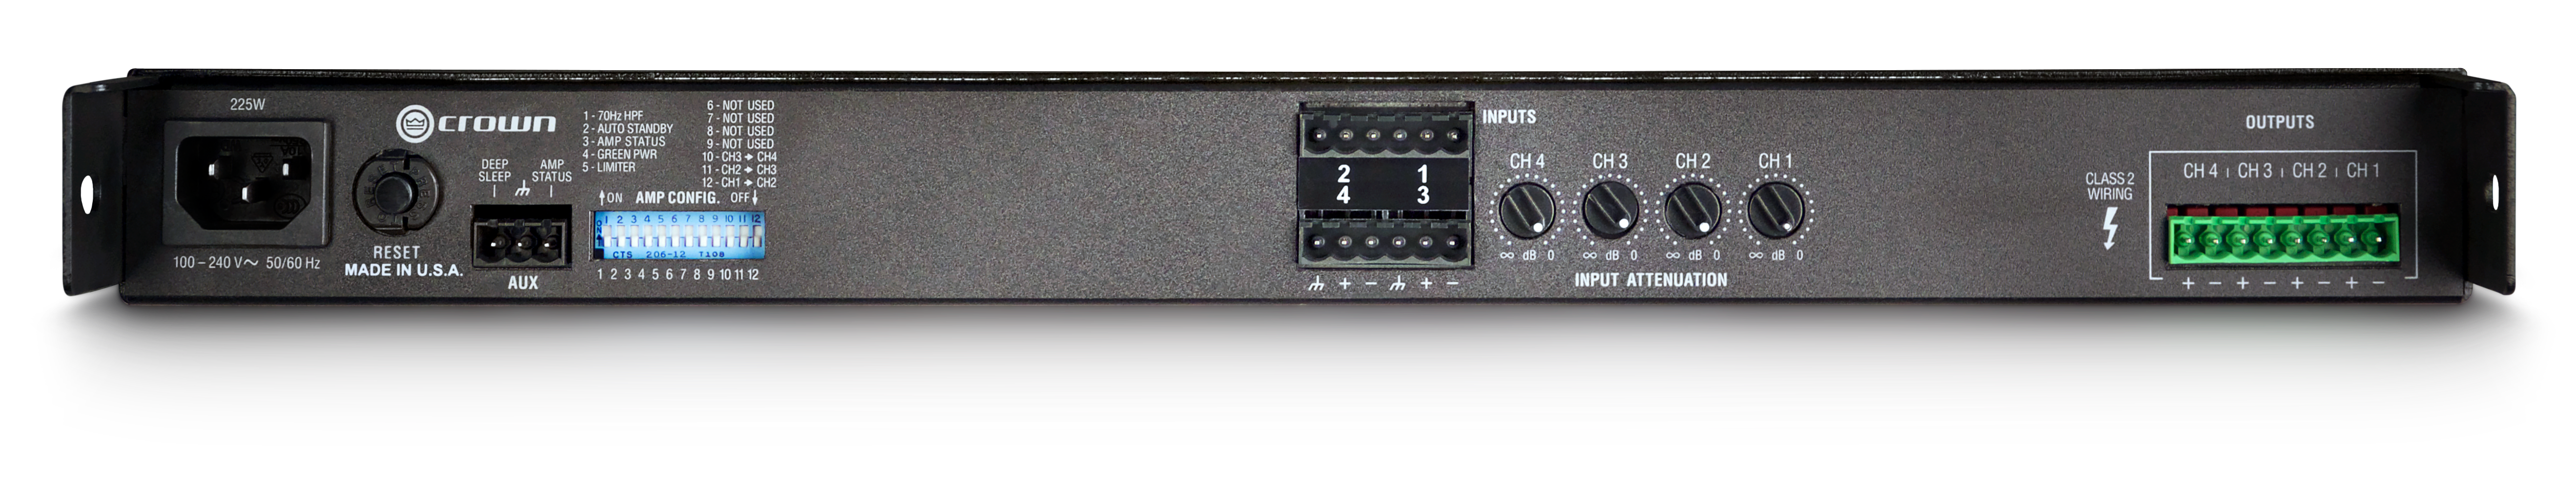 CROWN CT 475 Amplificador de potencia 4 canales, 75W 4 Ω por canal de salida